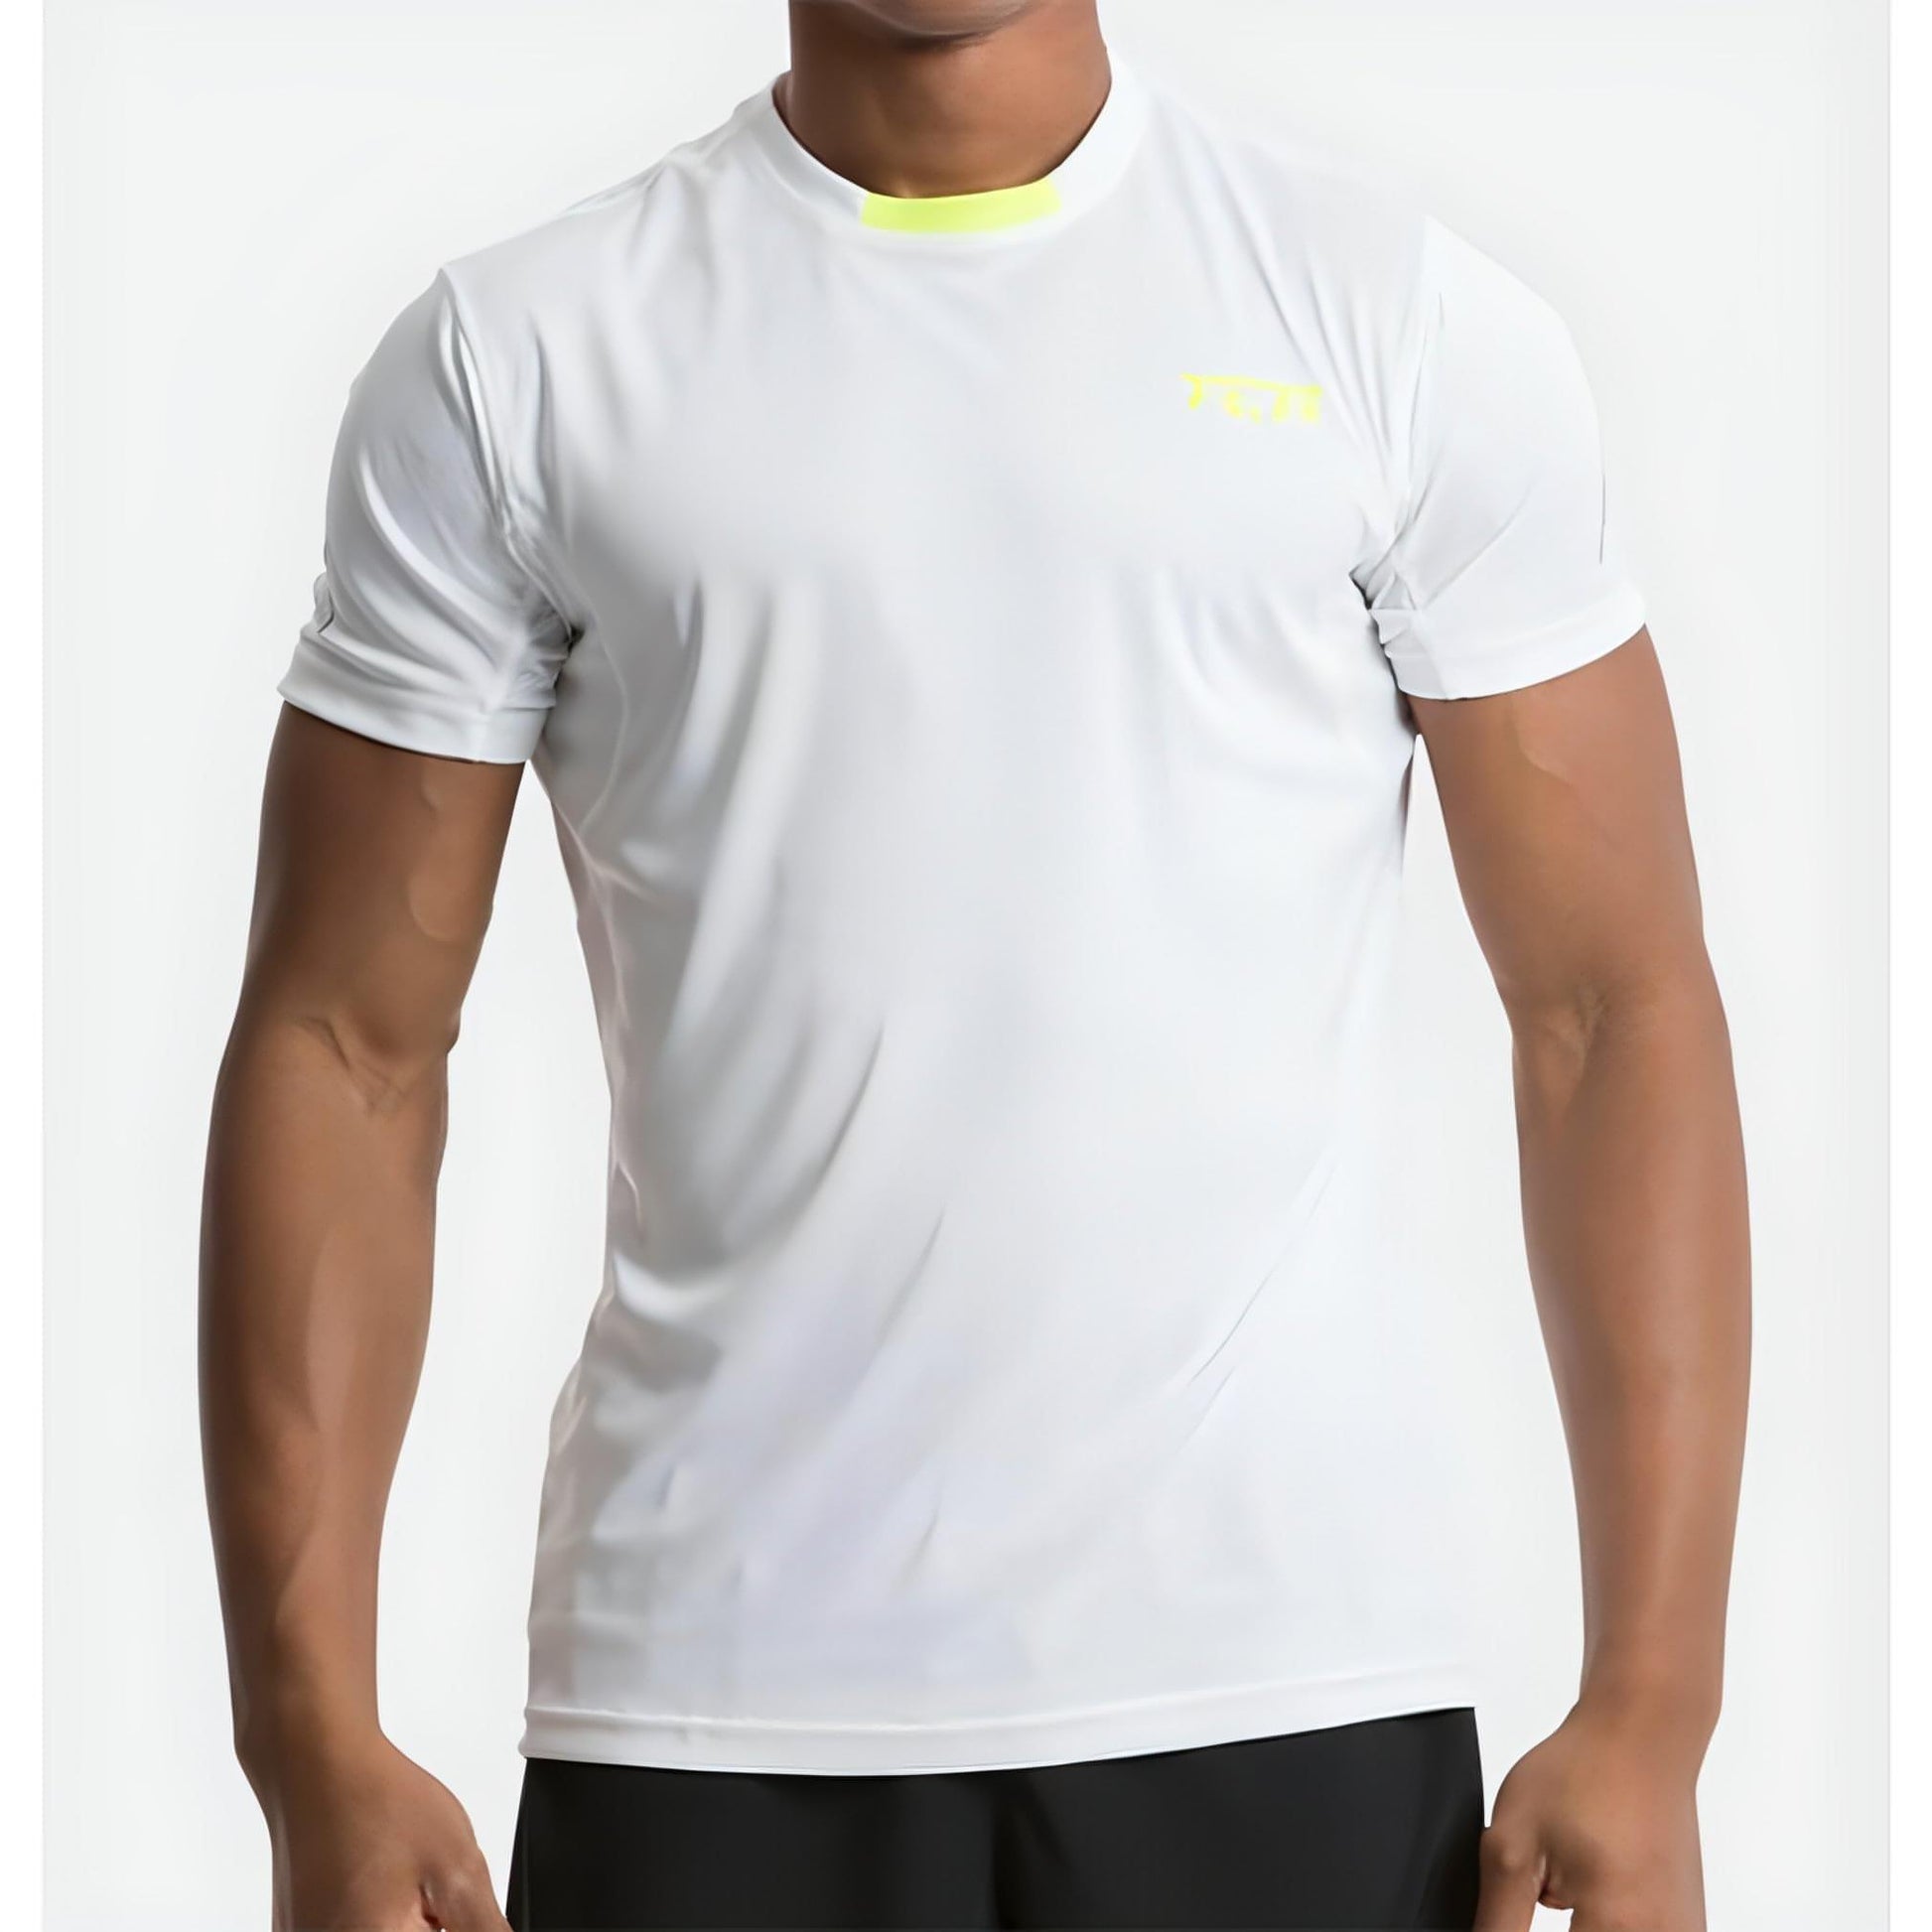 TCA Atomic Short Sleeve Mens Running Top - White - Start Fitness